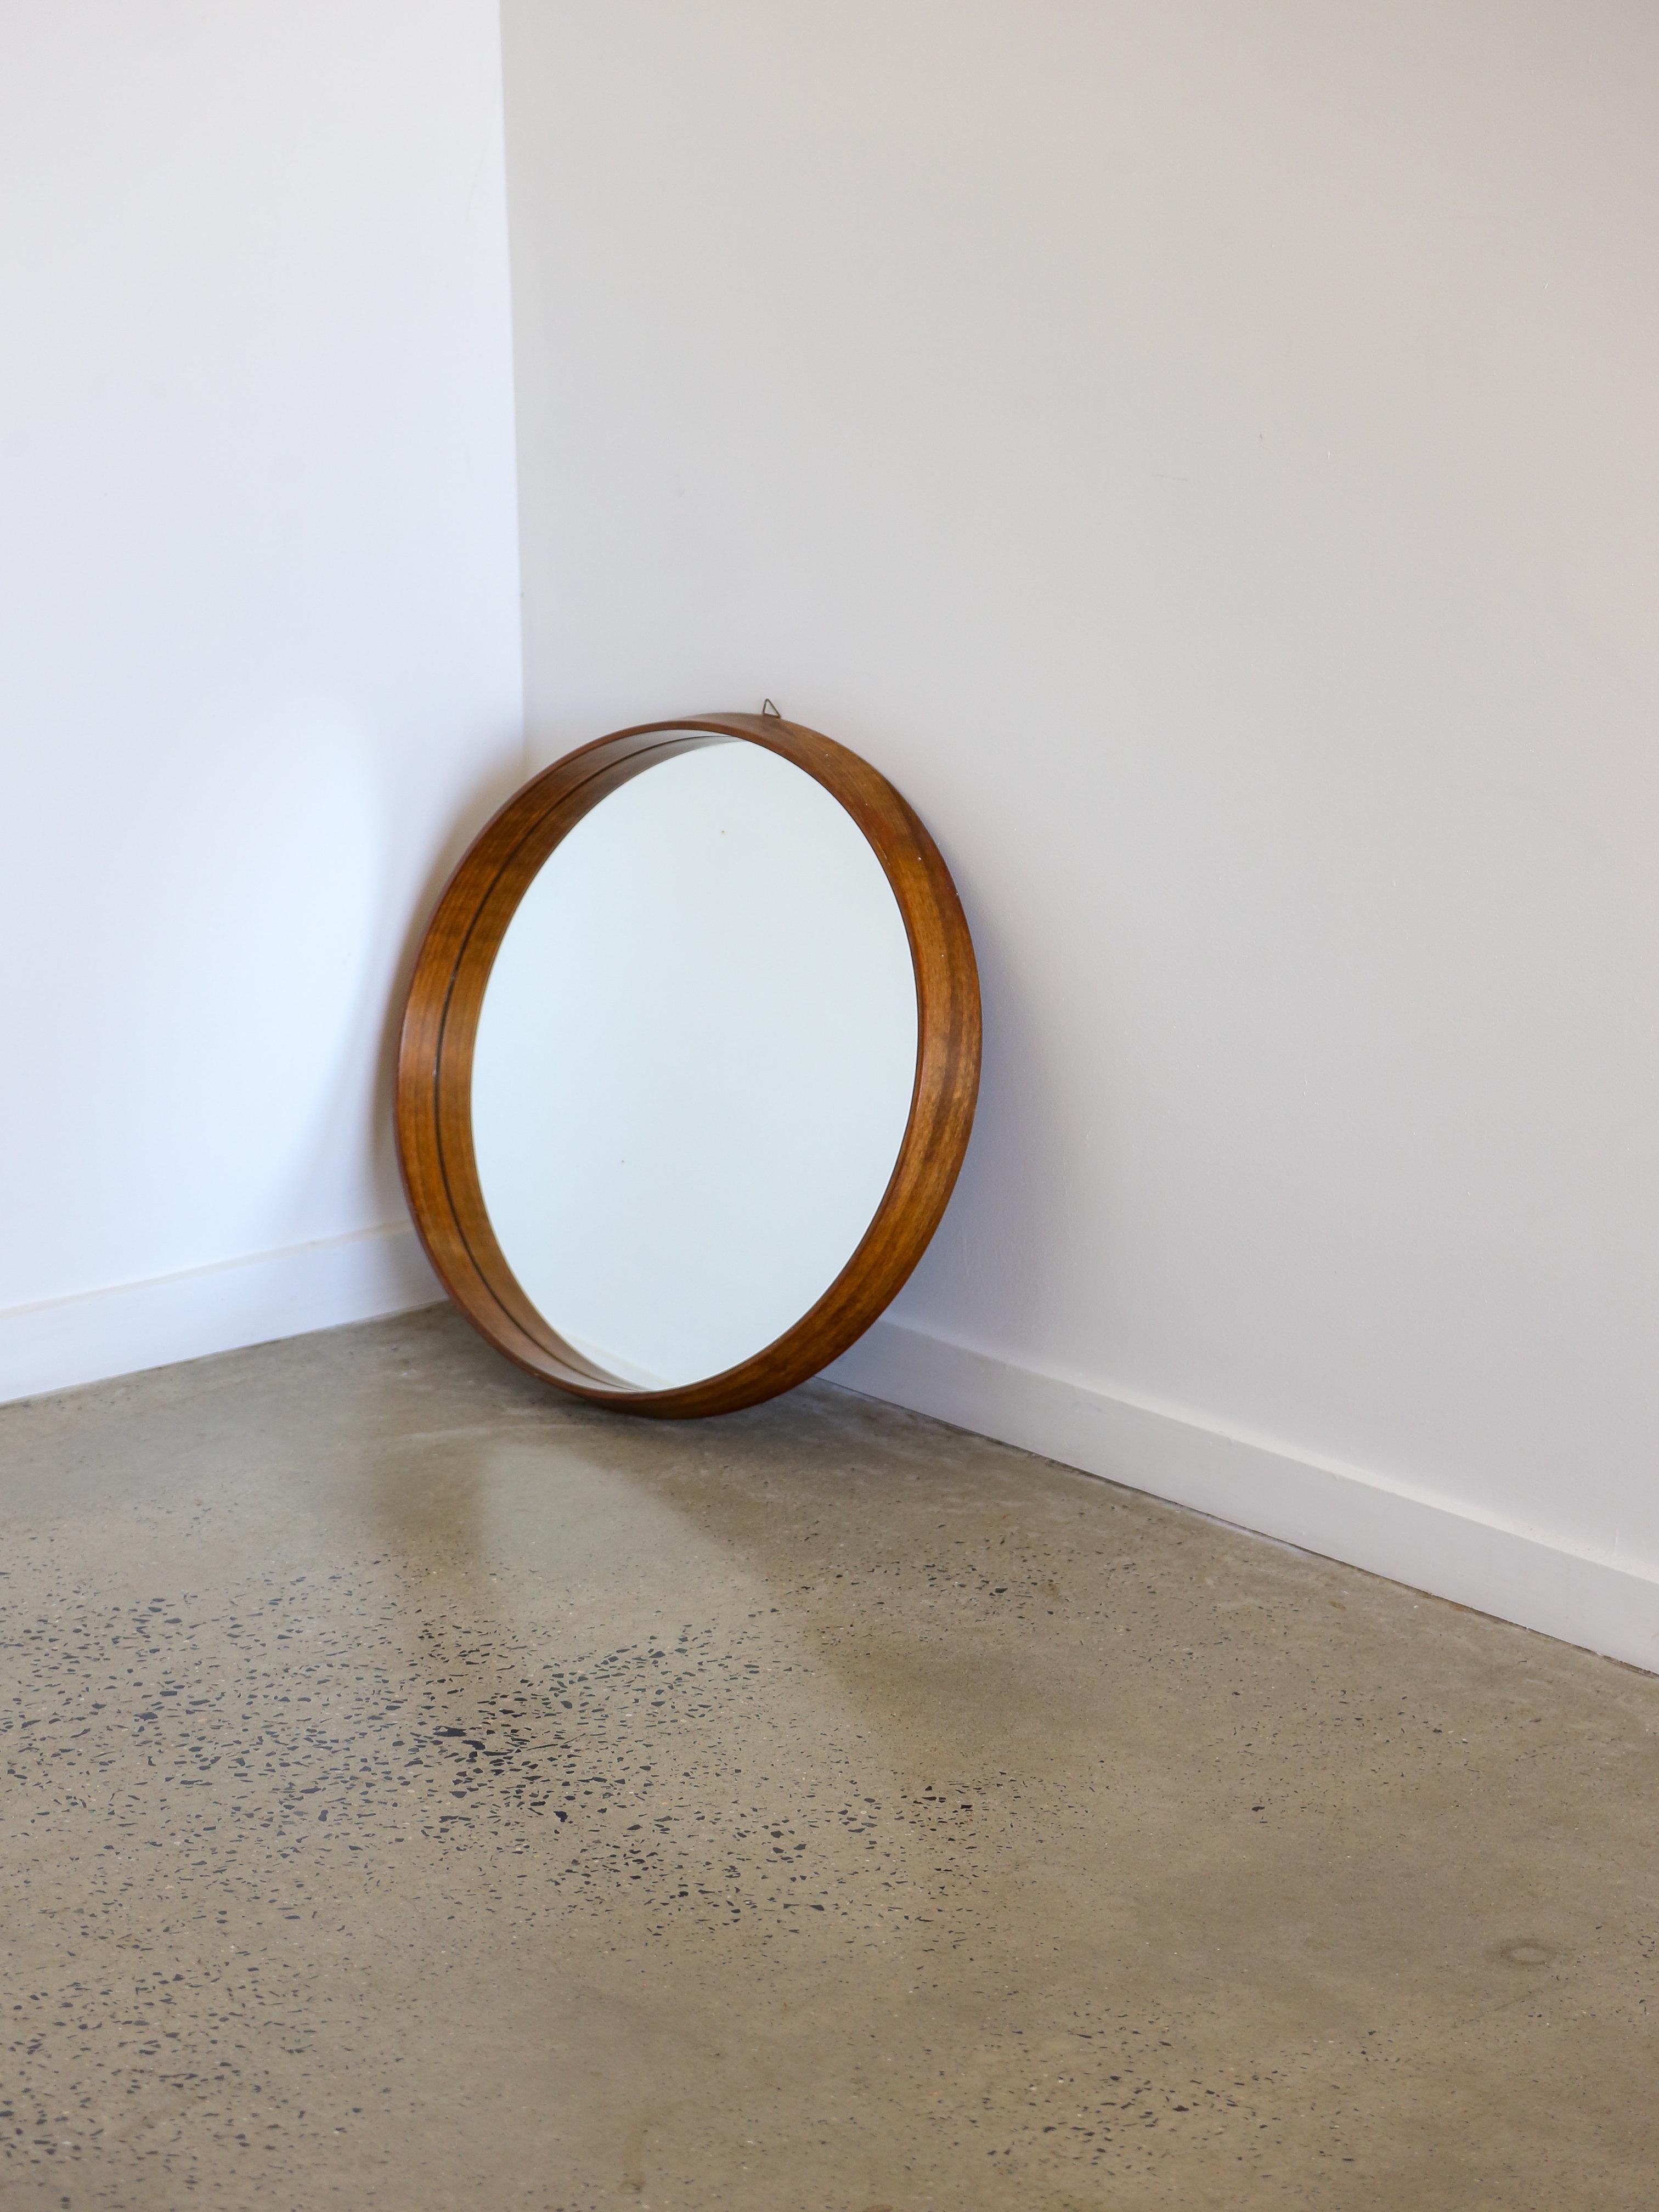 Italienischer Mid Century Modern runder Wandspiegel.

Der Rahmen des Spiegels ist aus Teakholz gefertigt, das für seine natürliche Schönheit und Haltbarkeit bekannt ist. Teakholz zeichnet sich durch eine ausgeprägte Maserung und eine warme, satte